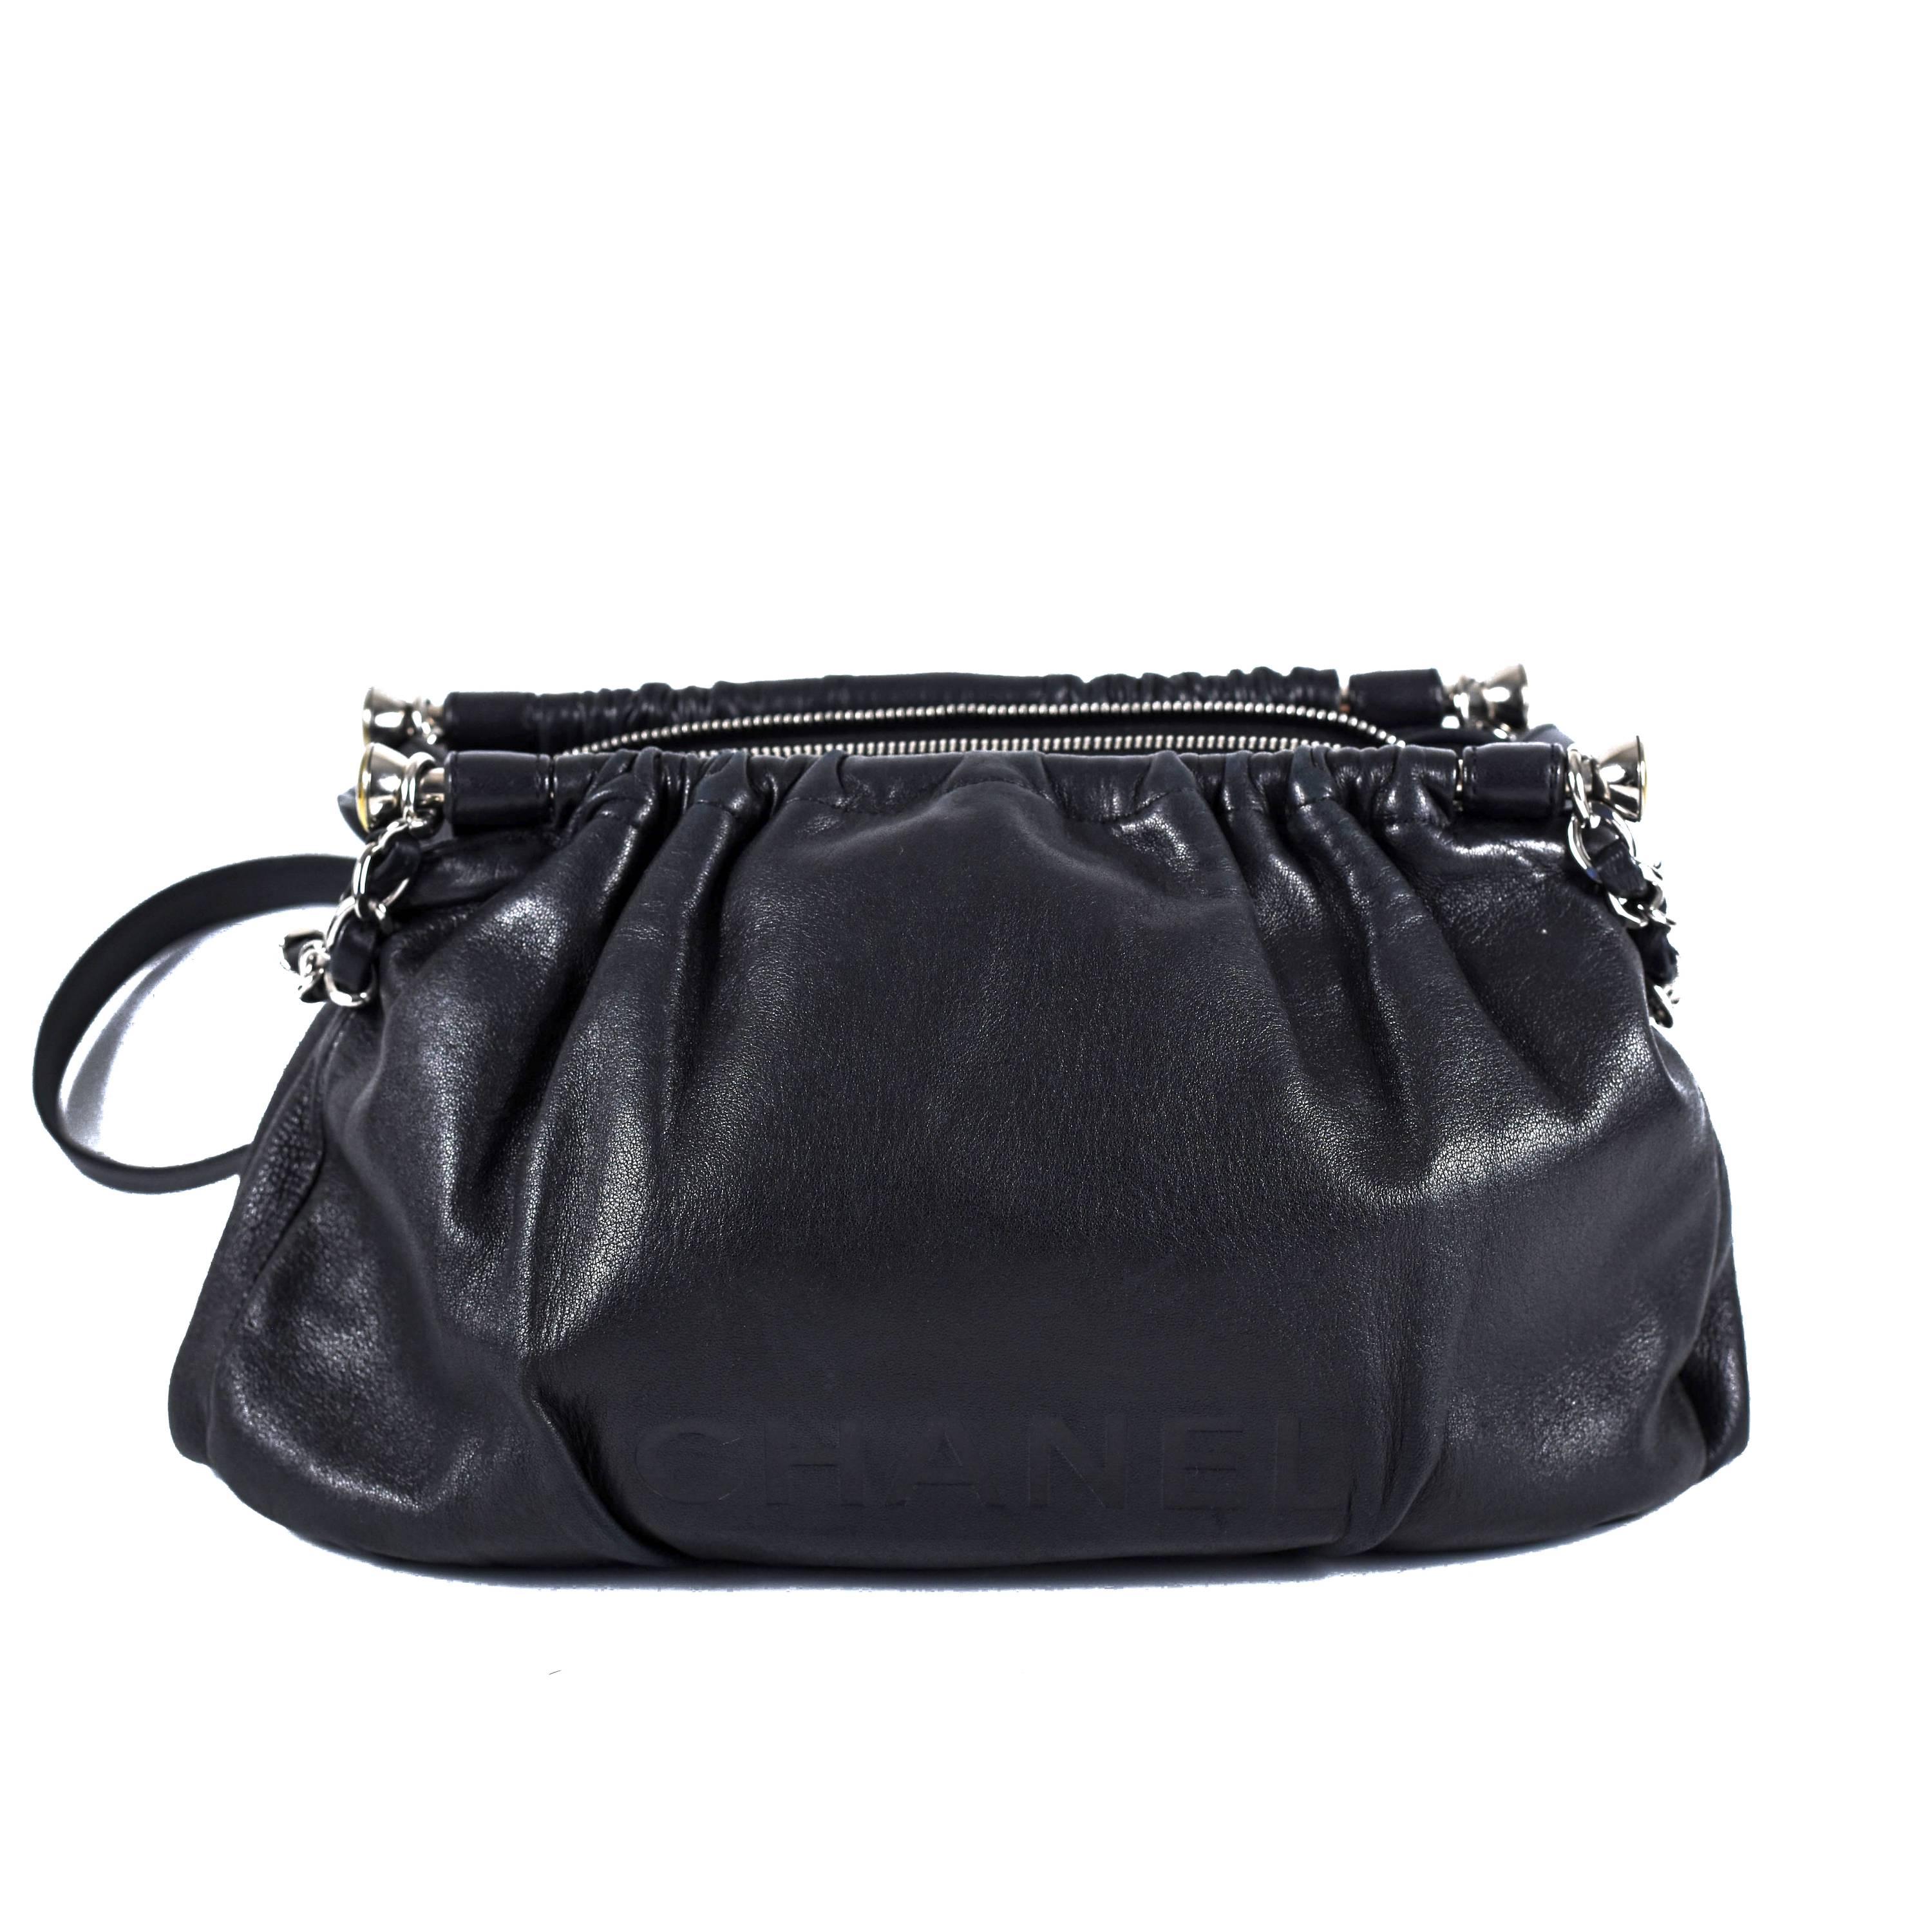 Chanel - LAX Frame Shoulder Bag

Color: Black

Material: Leather

------------------------------------------------------------

Details:

- silver tone hardware

- CHANEL logo embossed at front

- leather shoulder straps

- chain